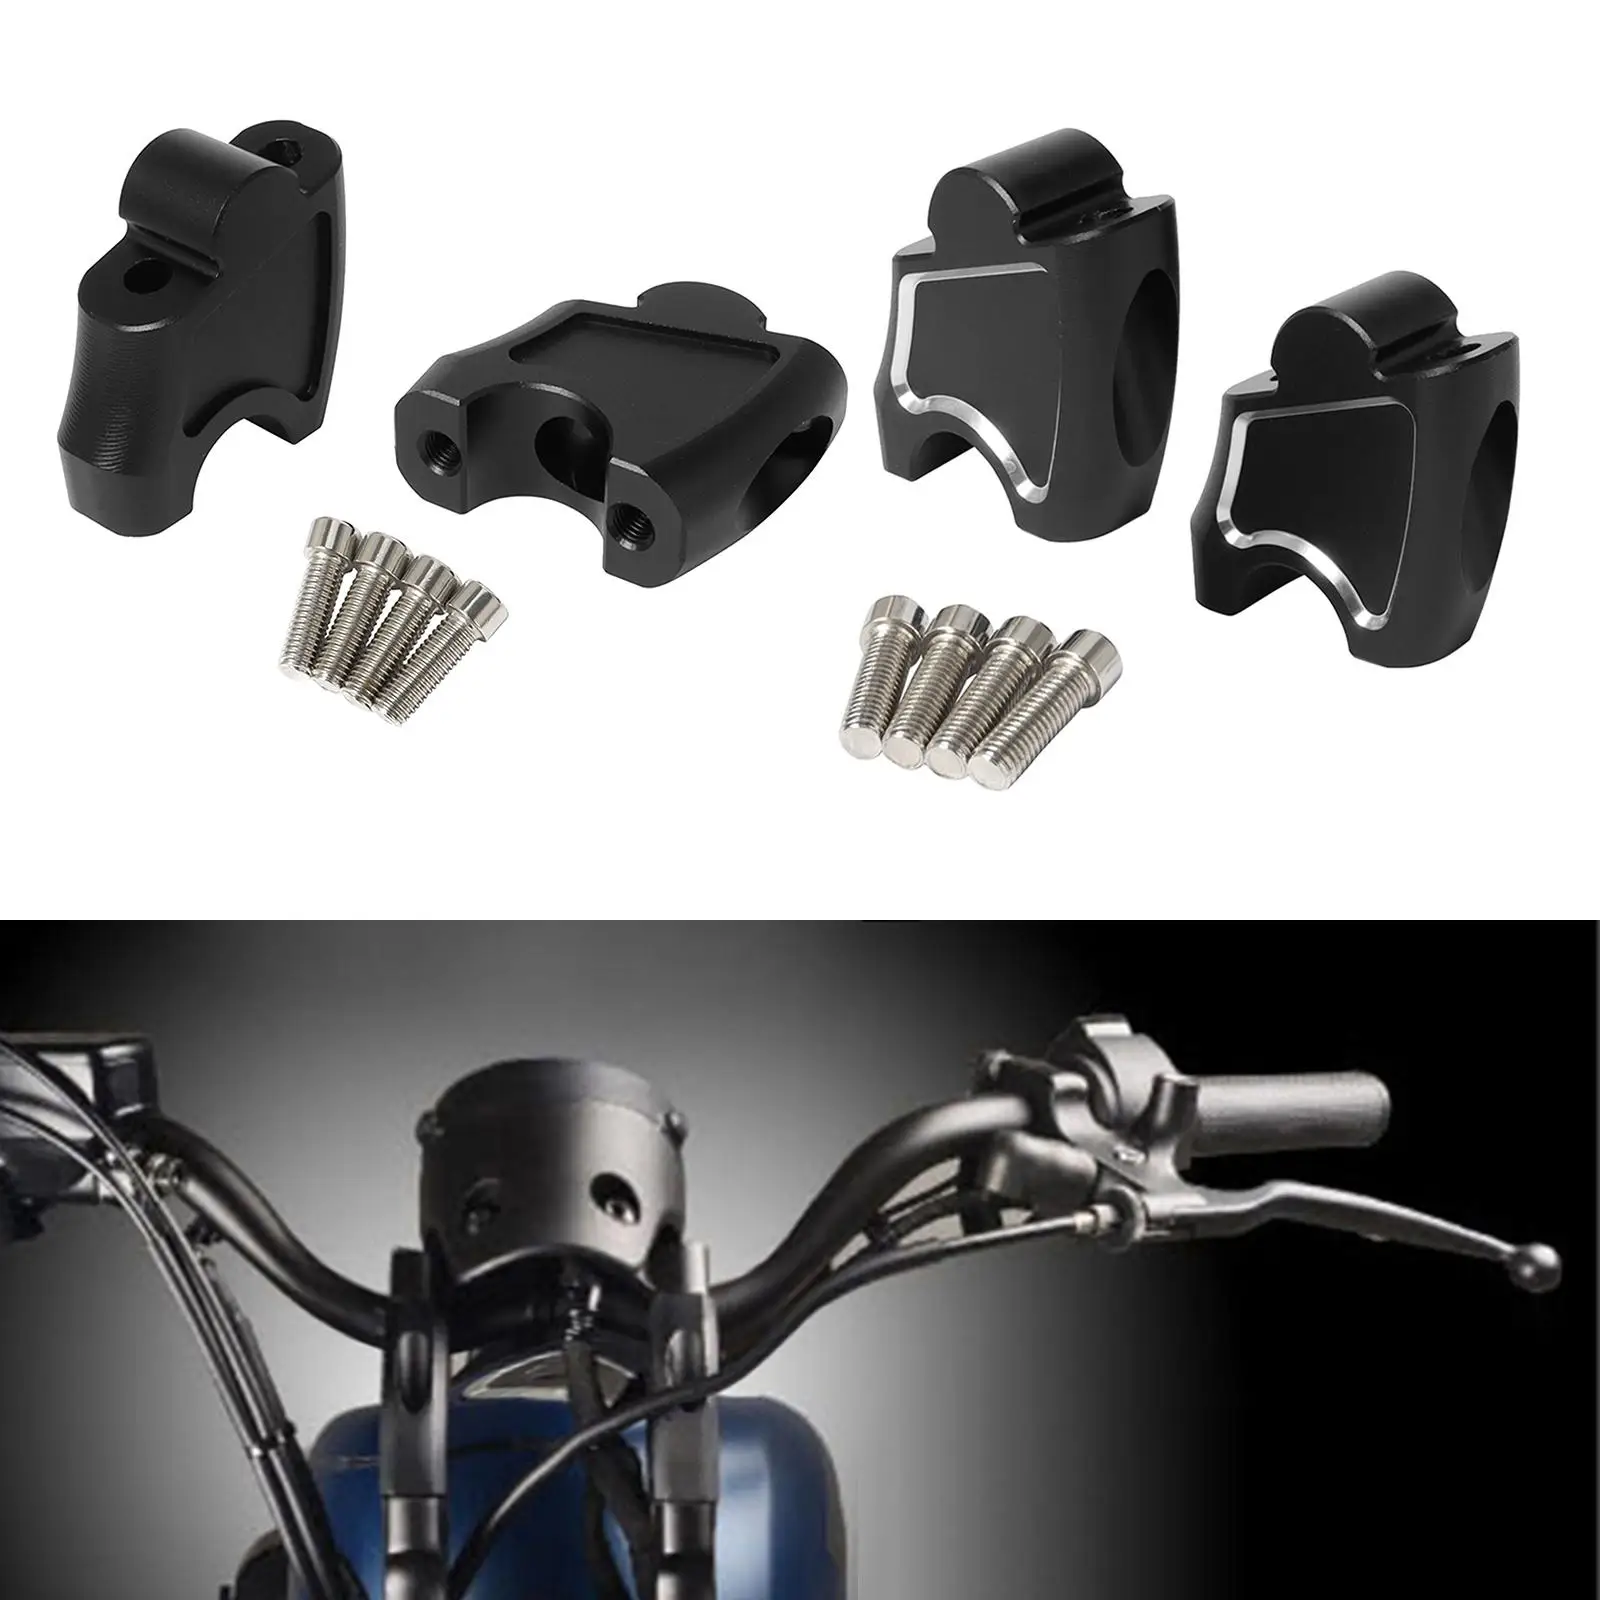 Universal Motorcycle Handlebar Riser Handlebar Clamp Move Mount Adapter Kit for Honda CMX500 for Rebel 500 Dirt Bike Motocross